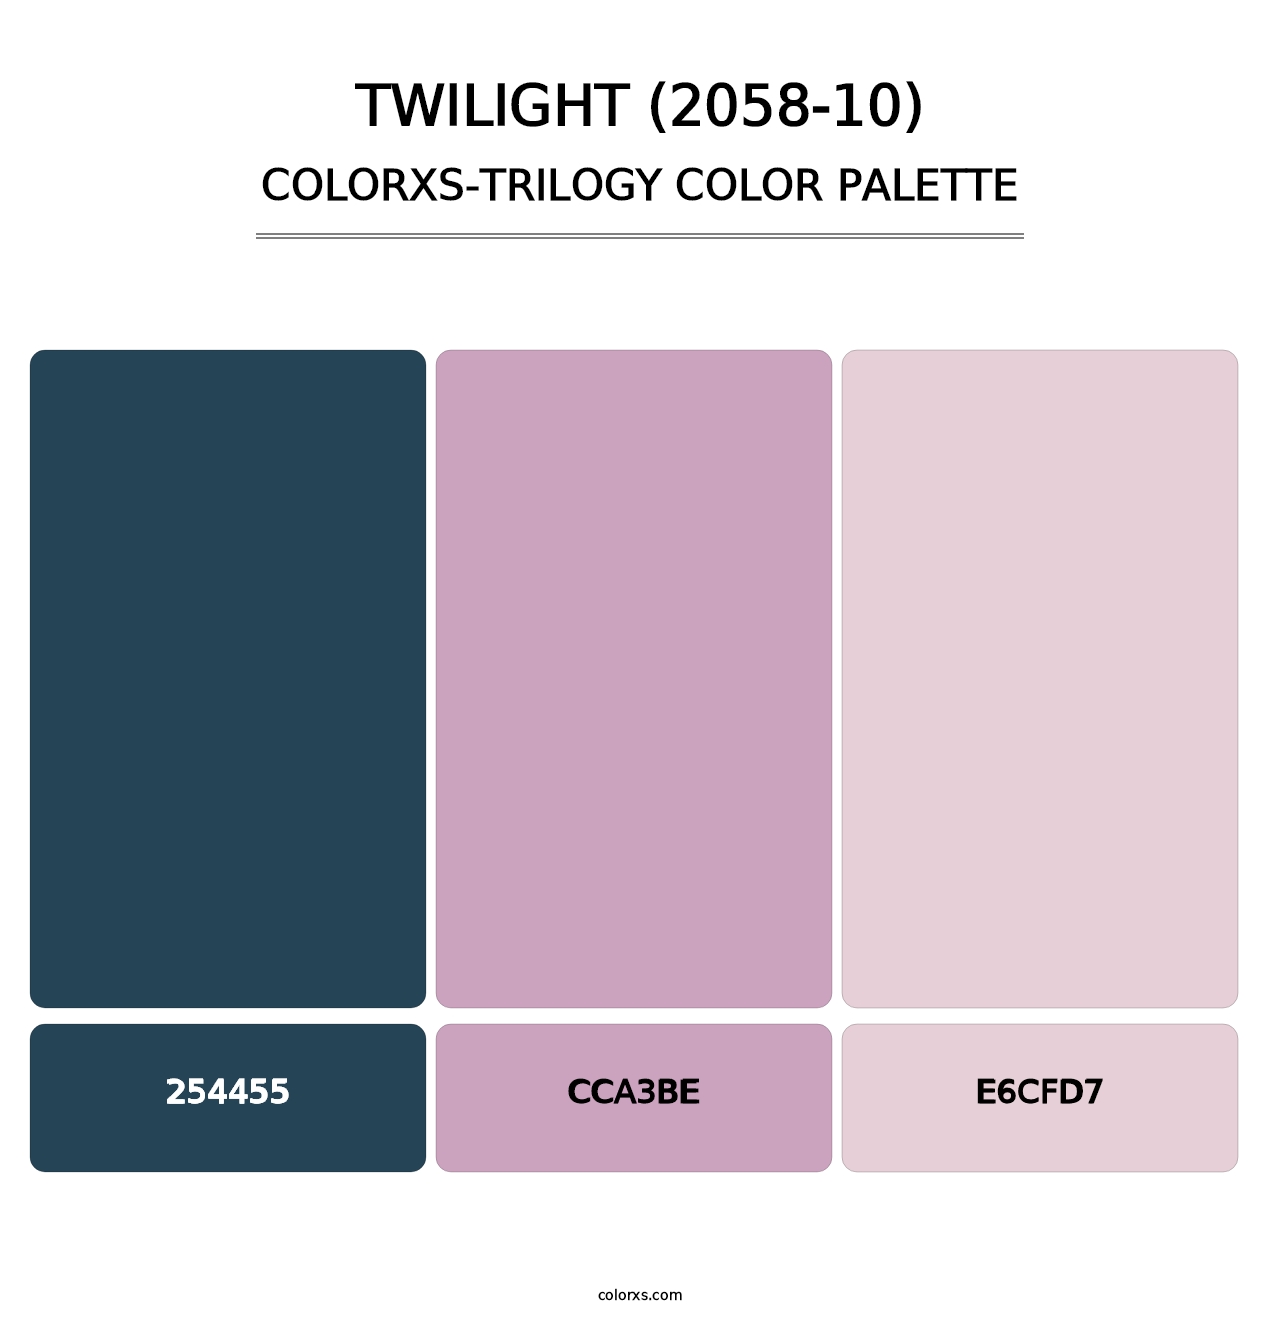 Twilight (2058-10) - Colorxs Trilogy Palette